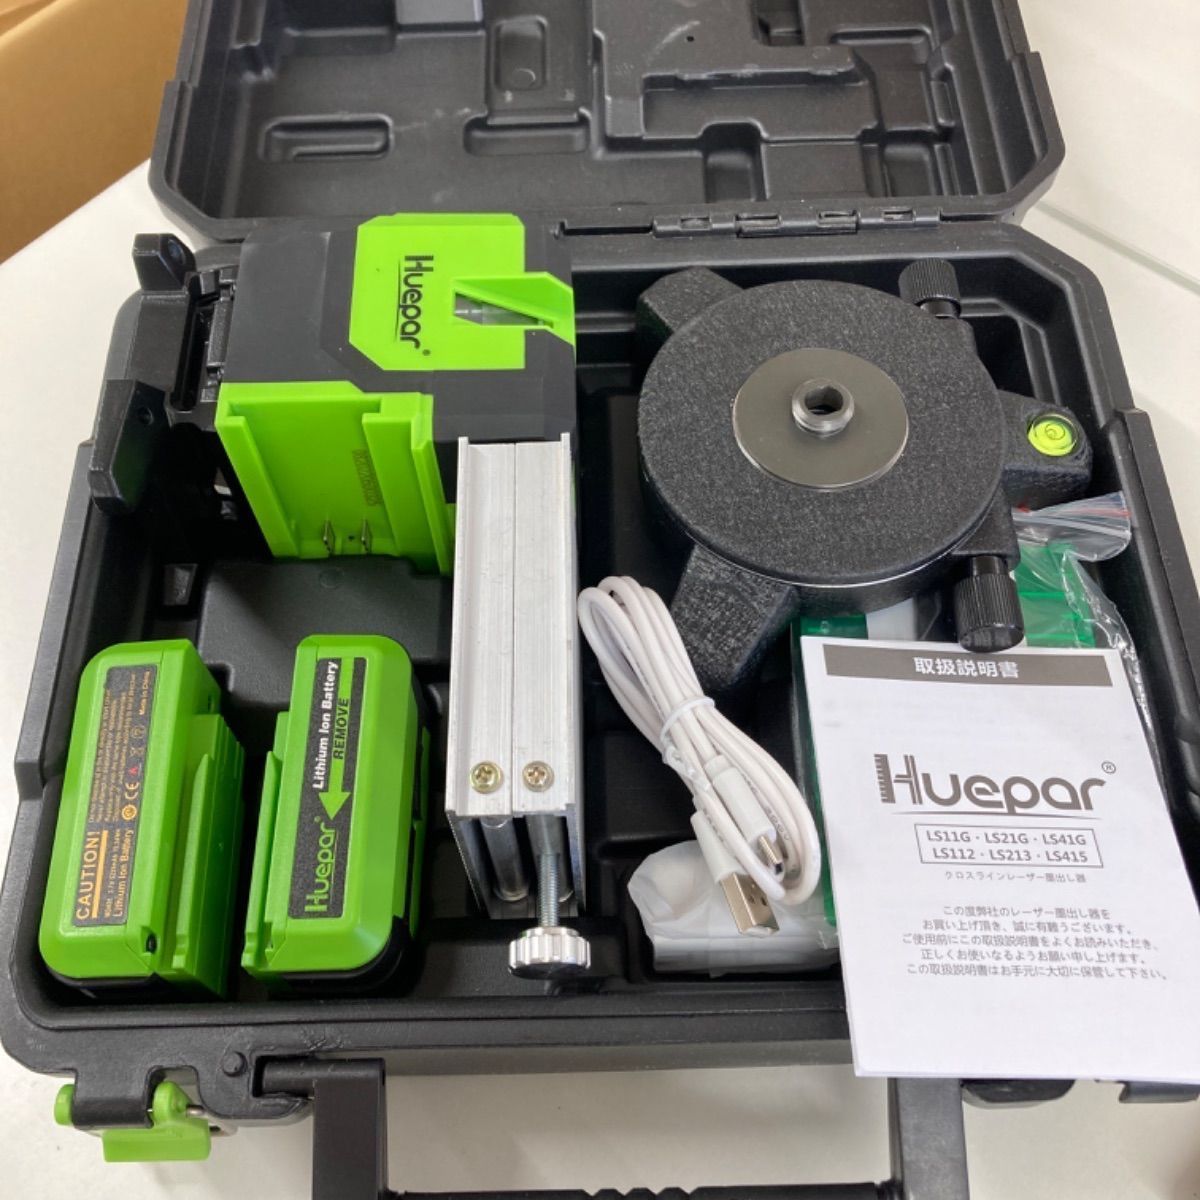 Huepar グリーン レーザー墨出し器 横フルライン 2つバッテリ付属 緑色